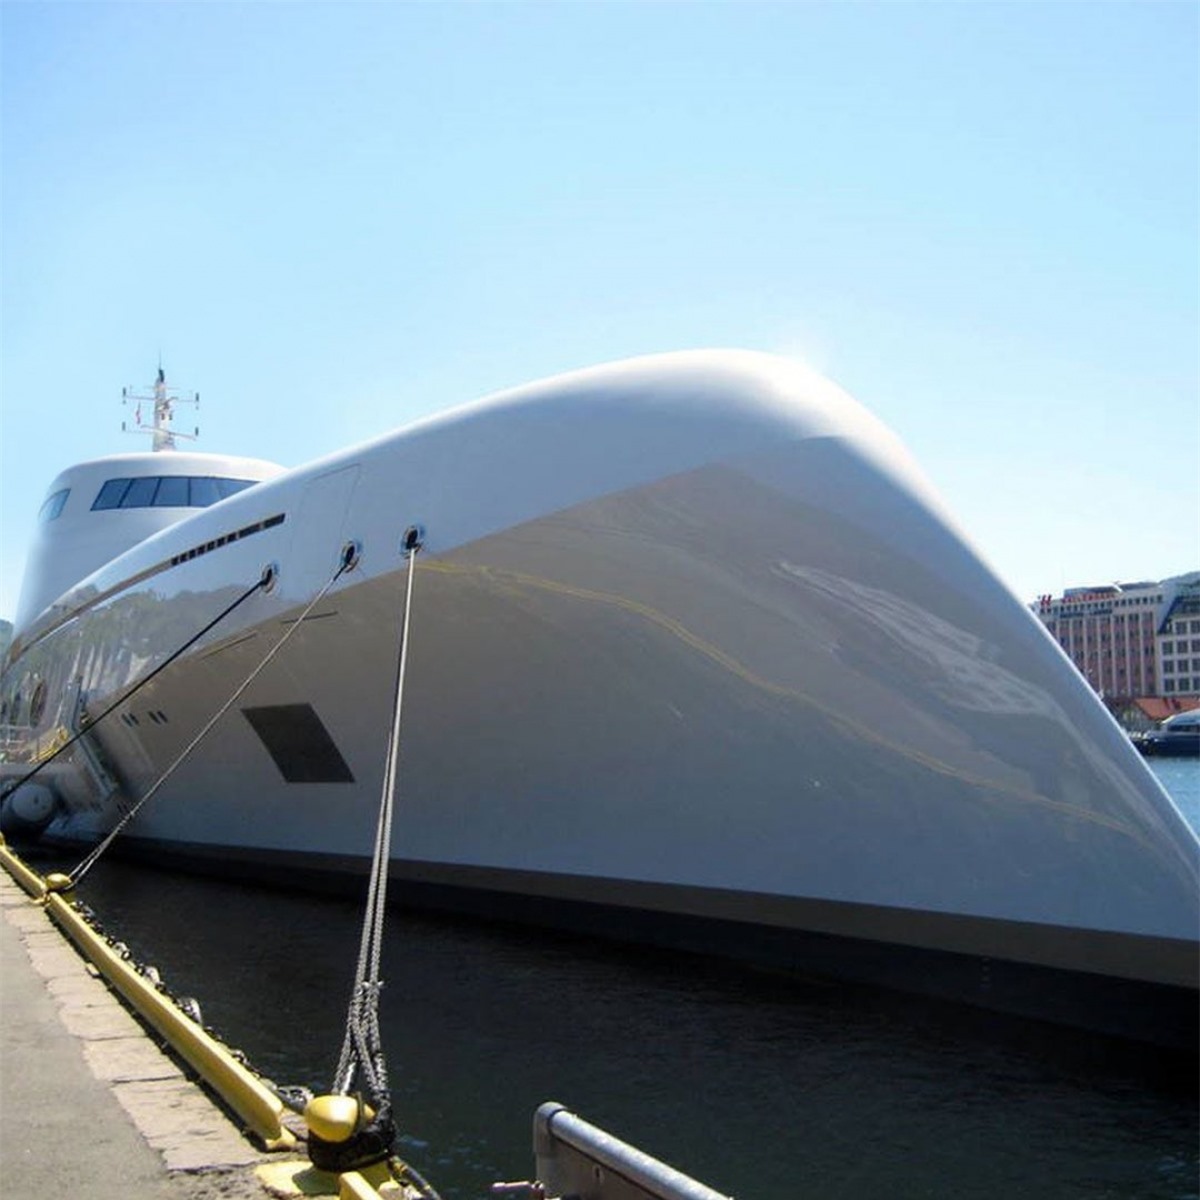 Khách sạn Lover’s Deep Luxury Submarine Hotel đặt trong một chiếc tàu ngầm. Nguồn: classictravelsl@Instagram